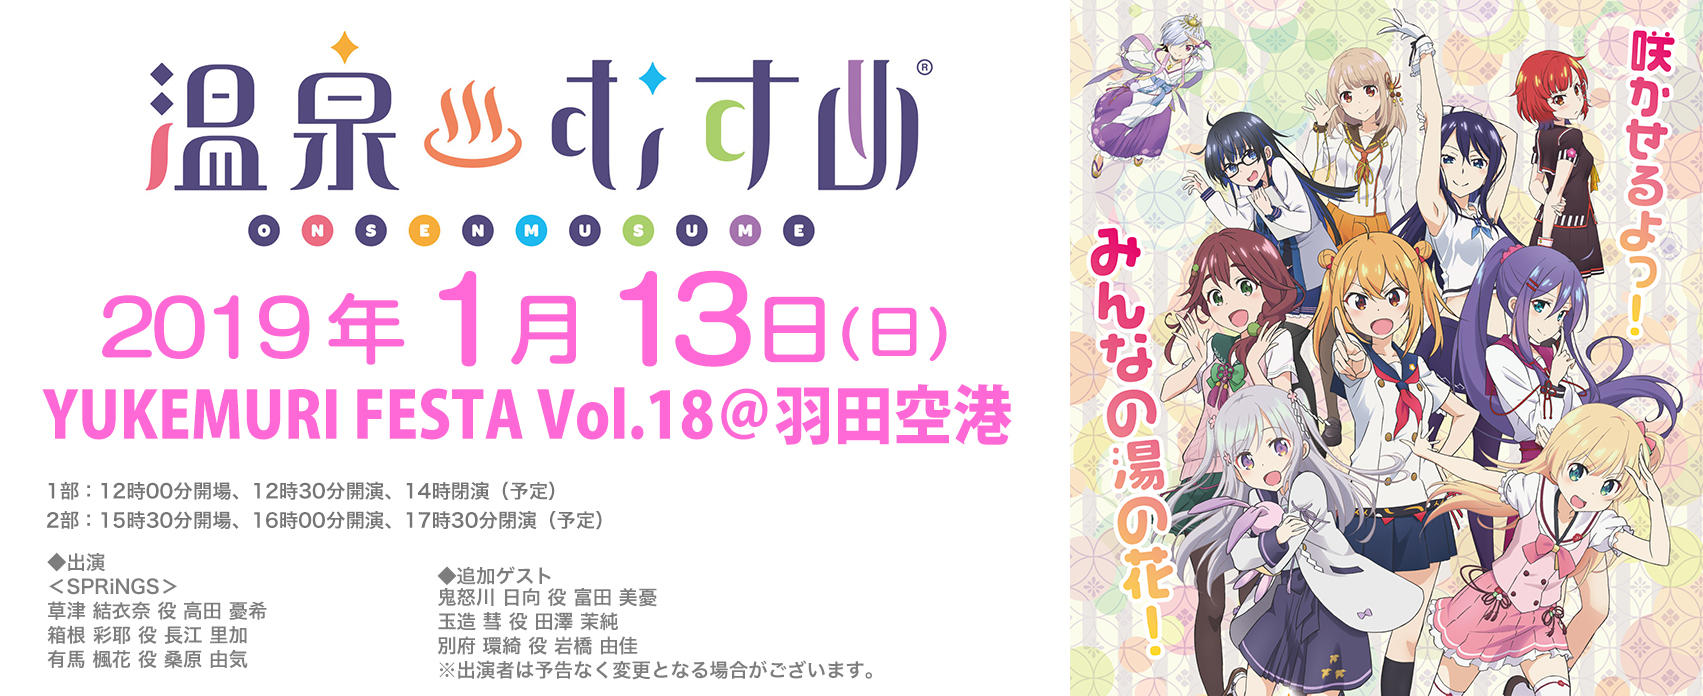 Yukemuri Festa Vol 18 羽田空港 東京のイベントスペース Tiat Sky Hall